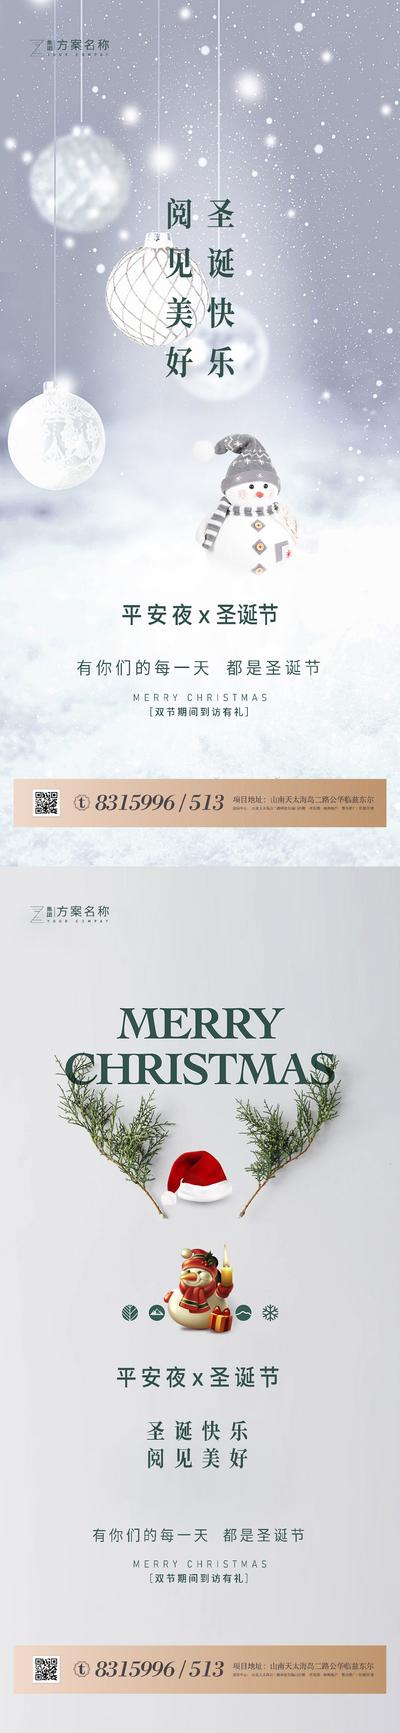 南门网 海报 房地产 公历节日 圣诞节 平安夜 礼盒 圣诞老人 圣诞树